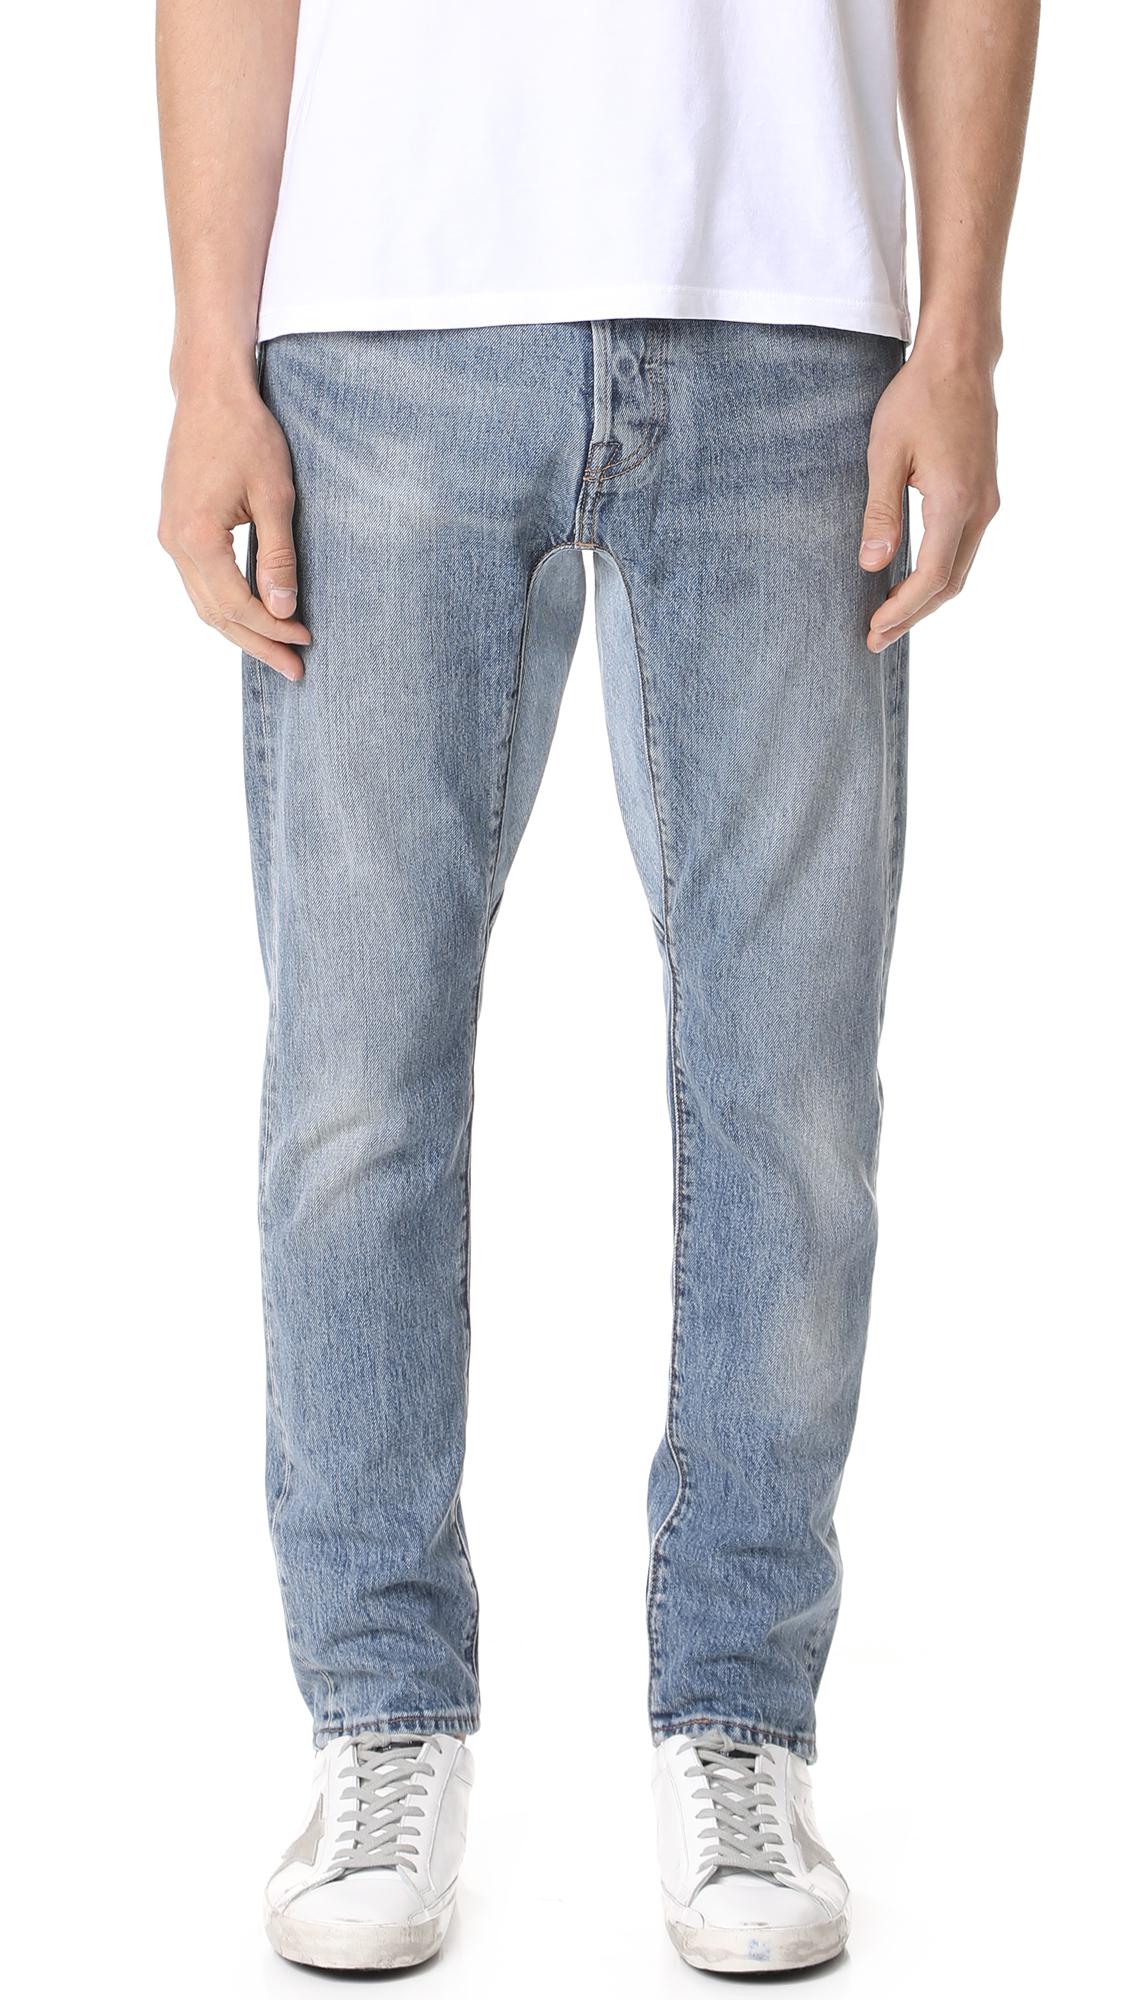 Levi's Custom Gusset Tapered Denim Jeans in Indigo (Blue) for Men - Lyst